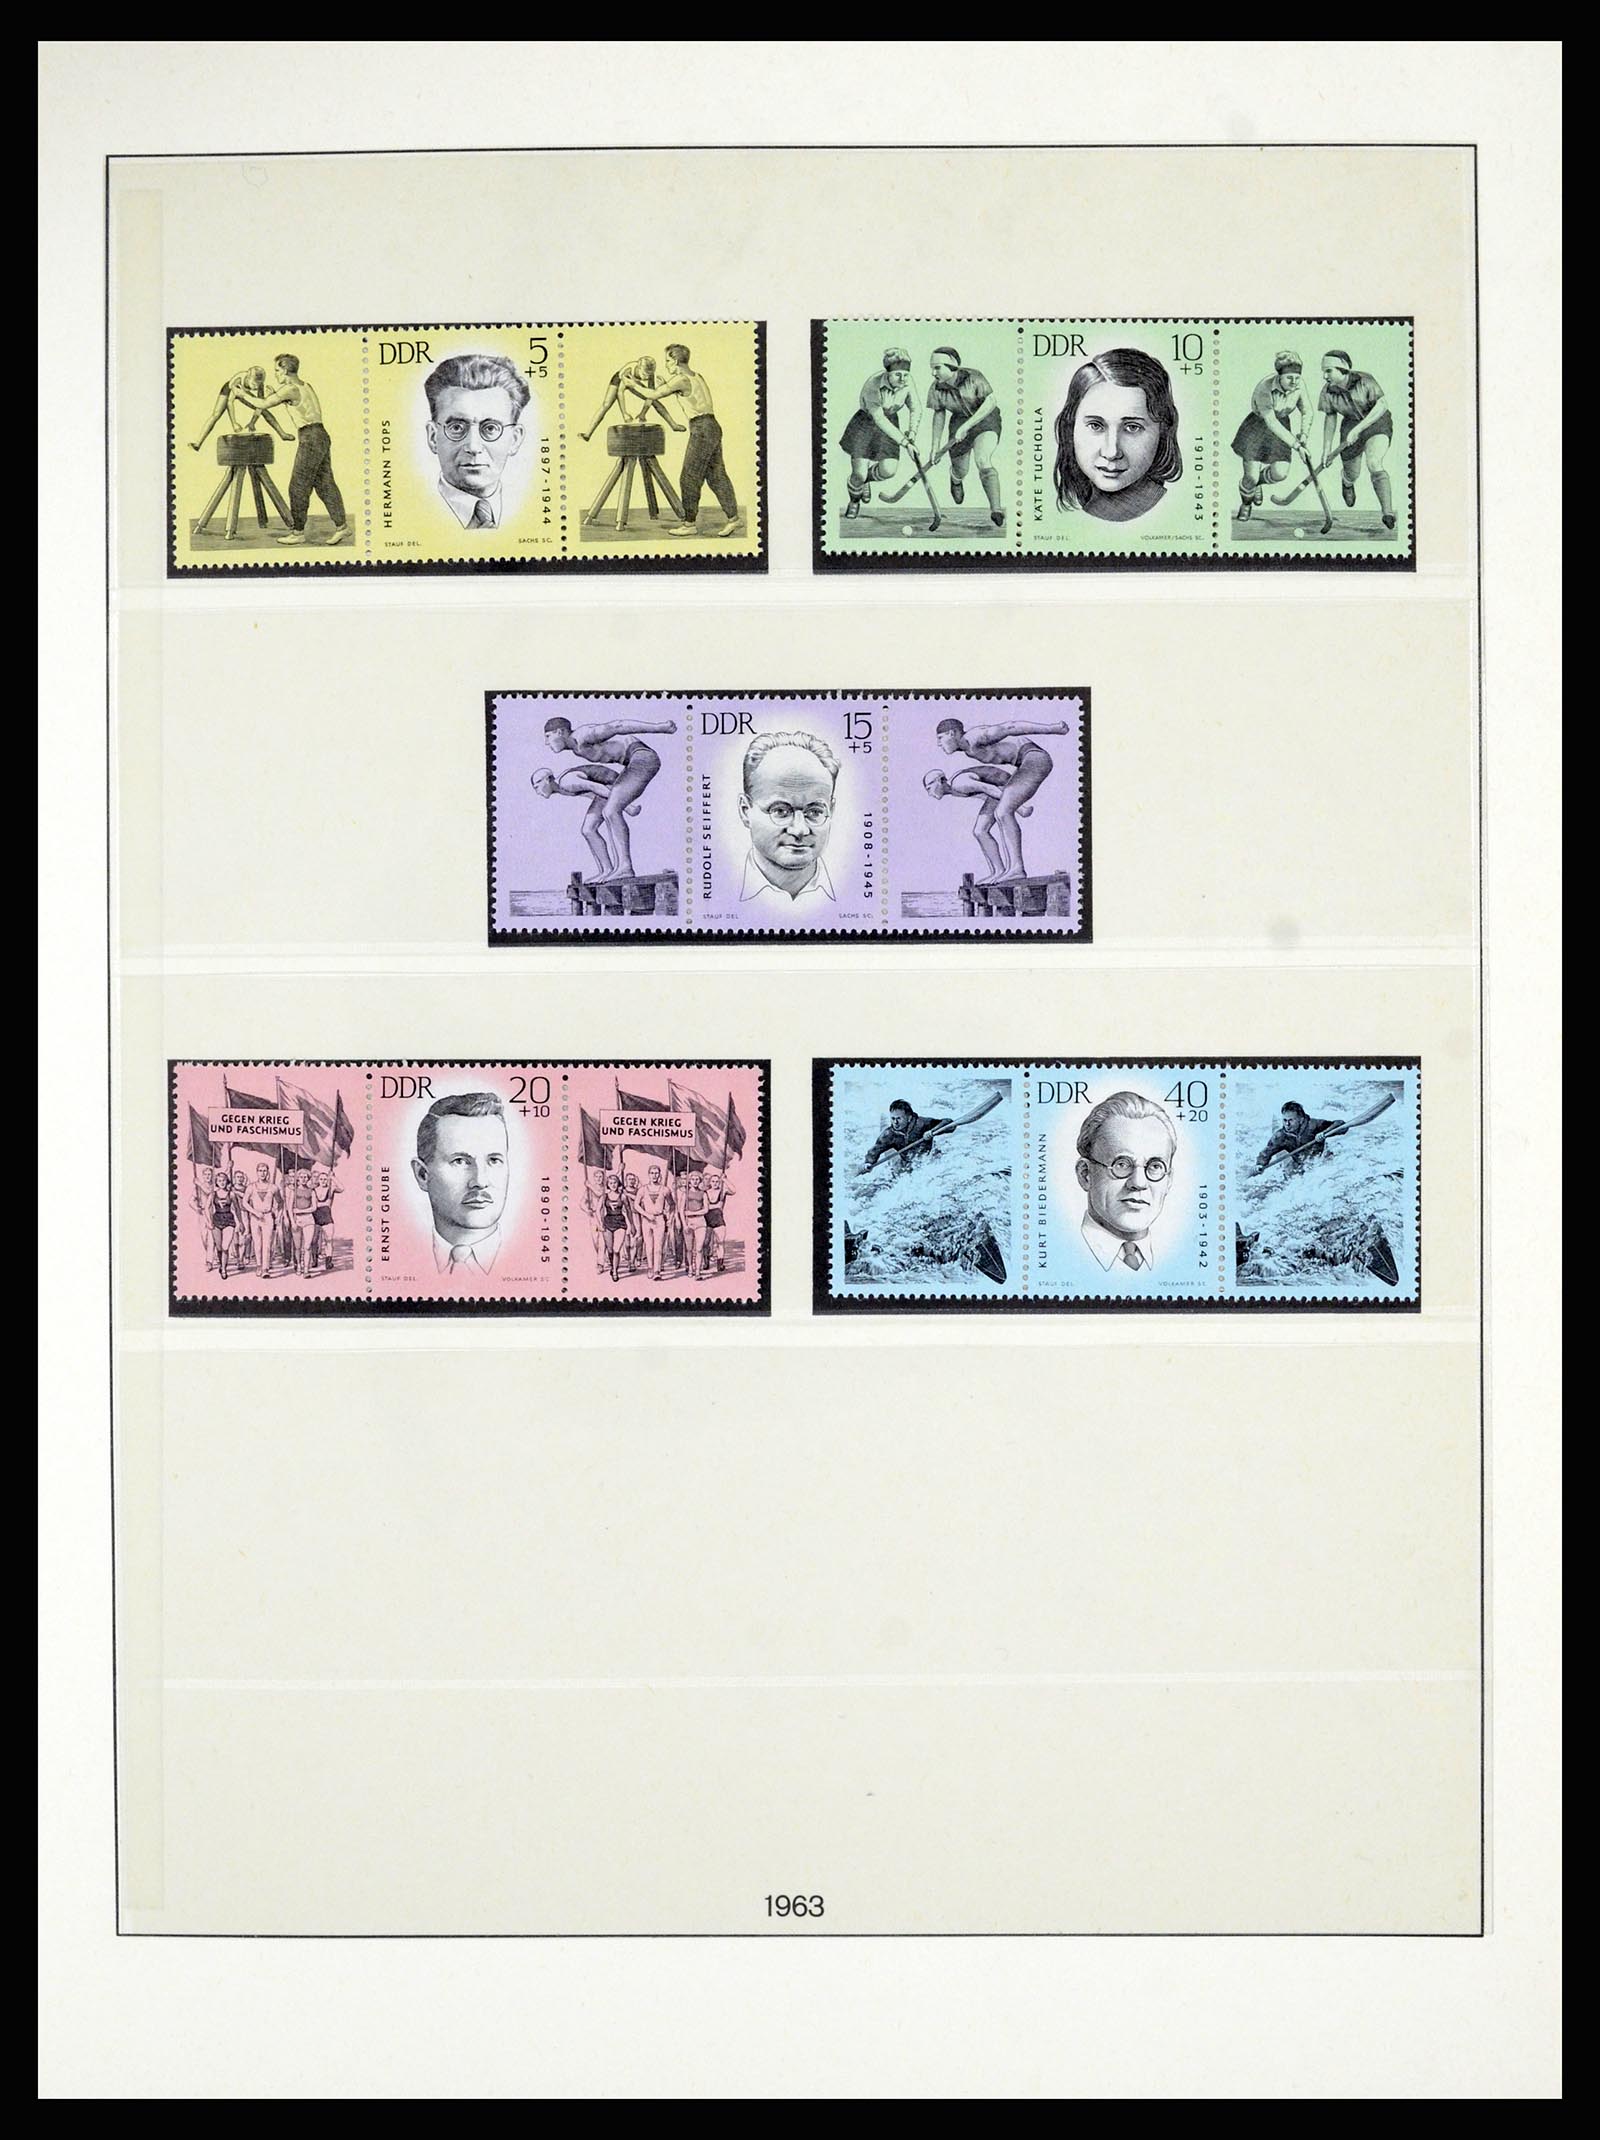 36879 023 - Postzegelverzameling 36879 DDR combinaties 1955-1981.